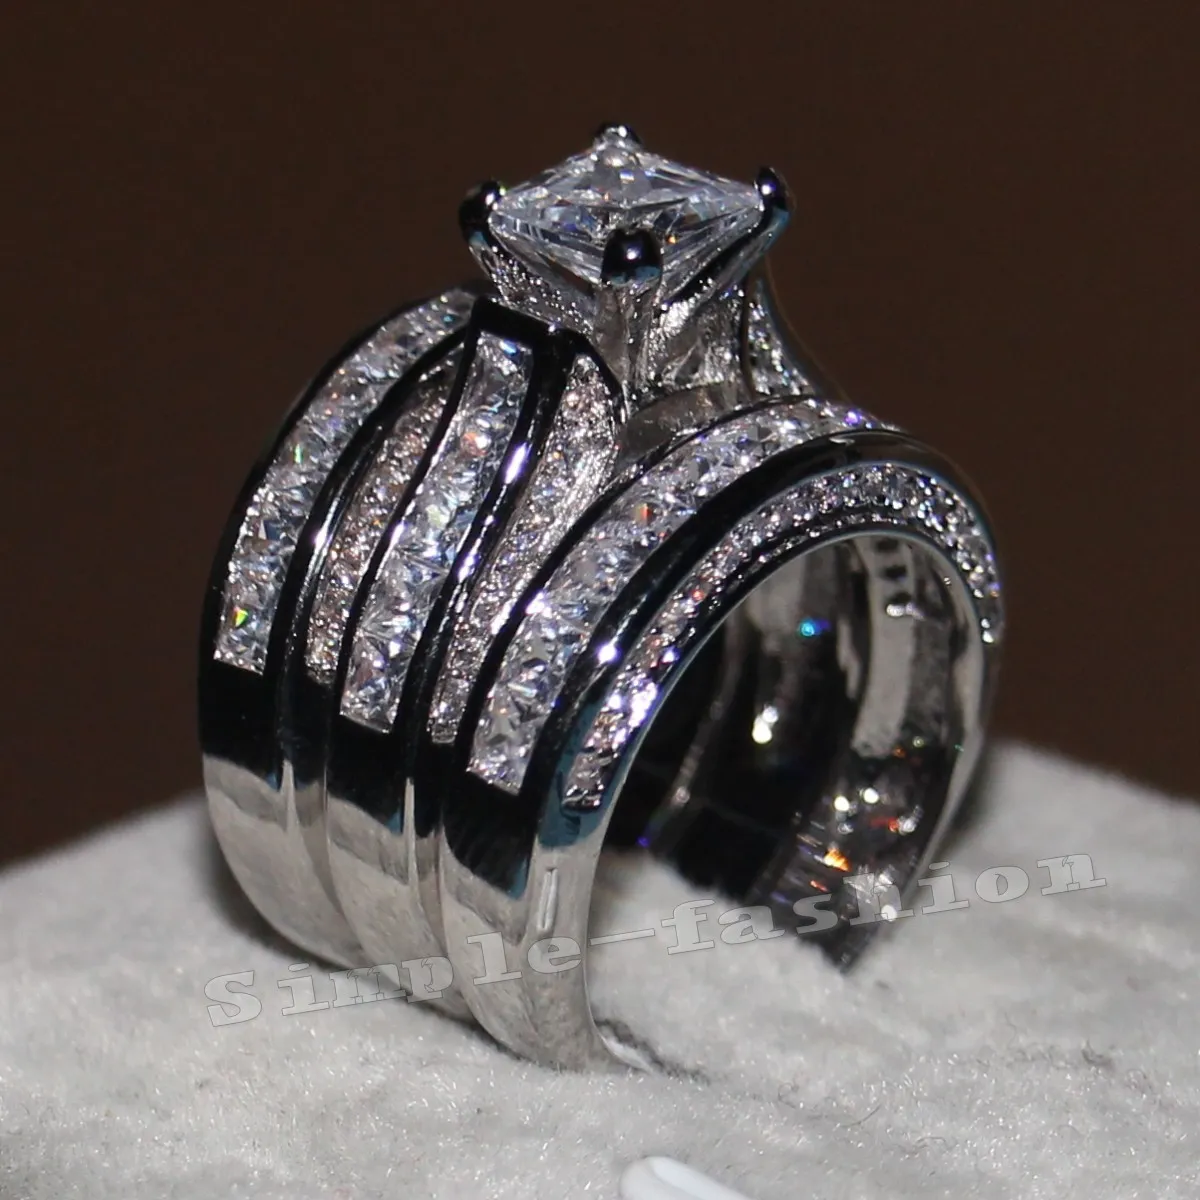 ベカロンファインジュエリープリンセスカット20ct Czダイヤモンド婚約のウェディングバンドリングセット14ktホワイトゴールド充填指輪